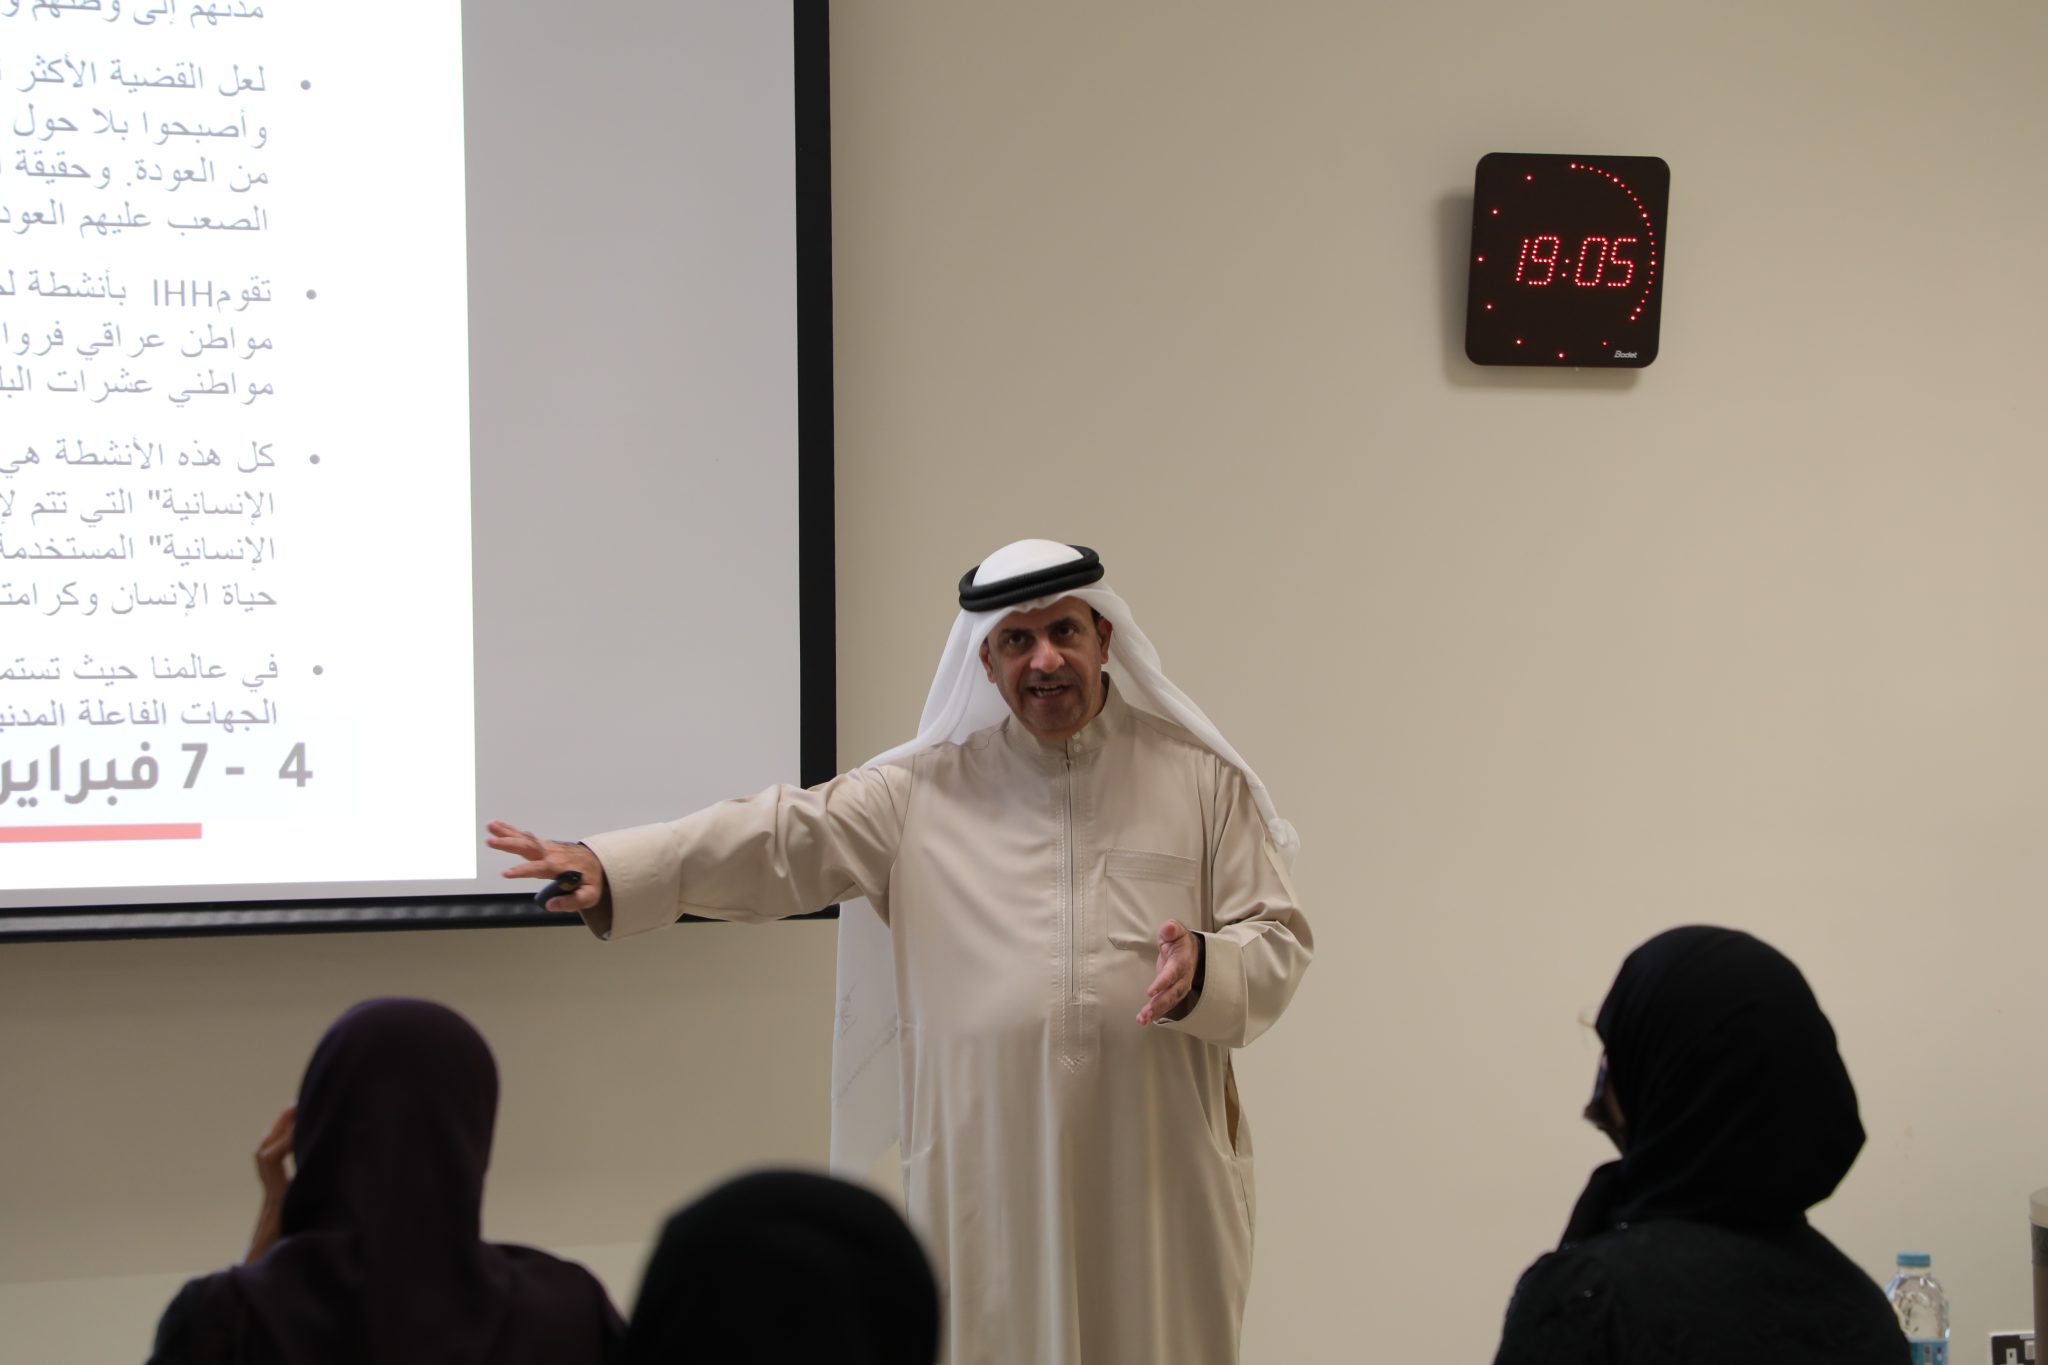 إختتمت الأكاديمية الدبلوماسية ومركز خدمة المجتمع والتعليم المستمر بجامعة قطر البرنامج التدريبي الدولي( الدبلوماسية الإنسانية )